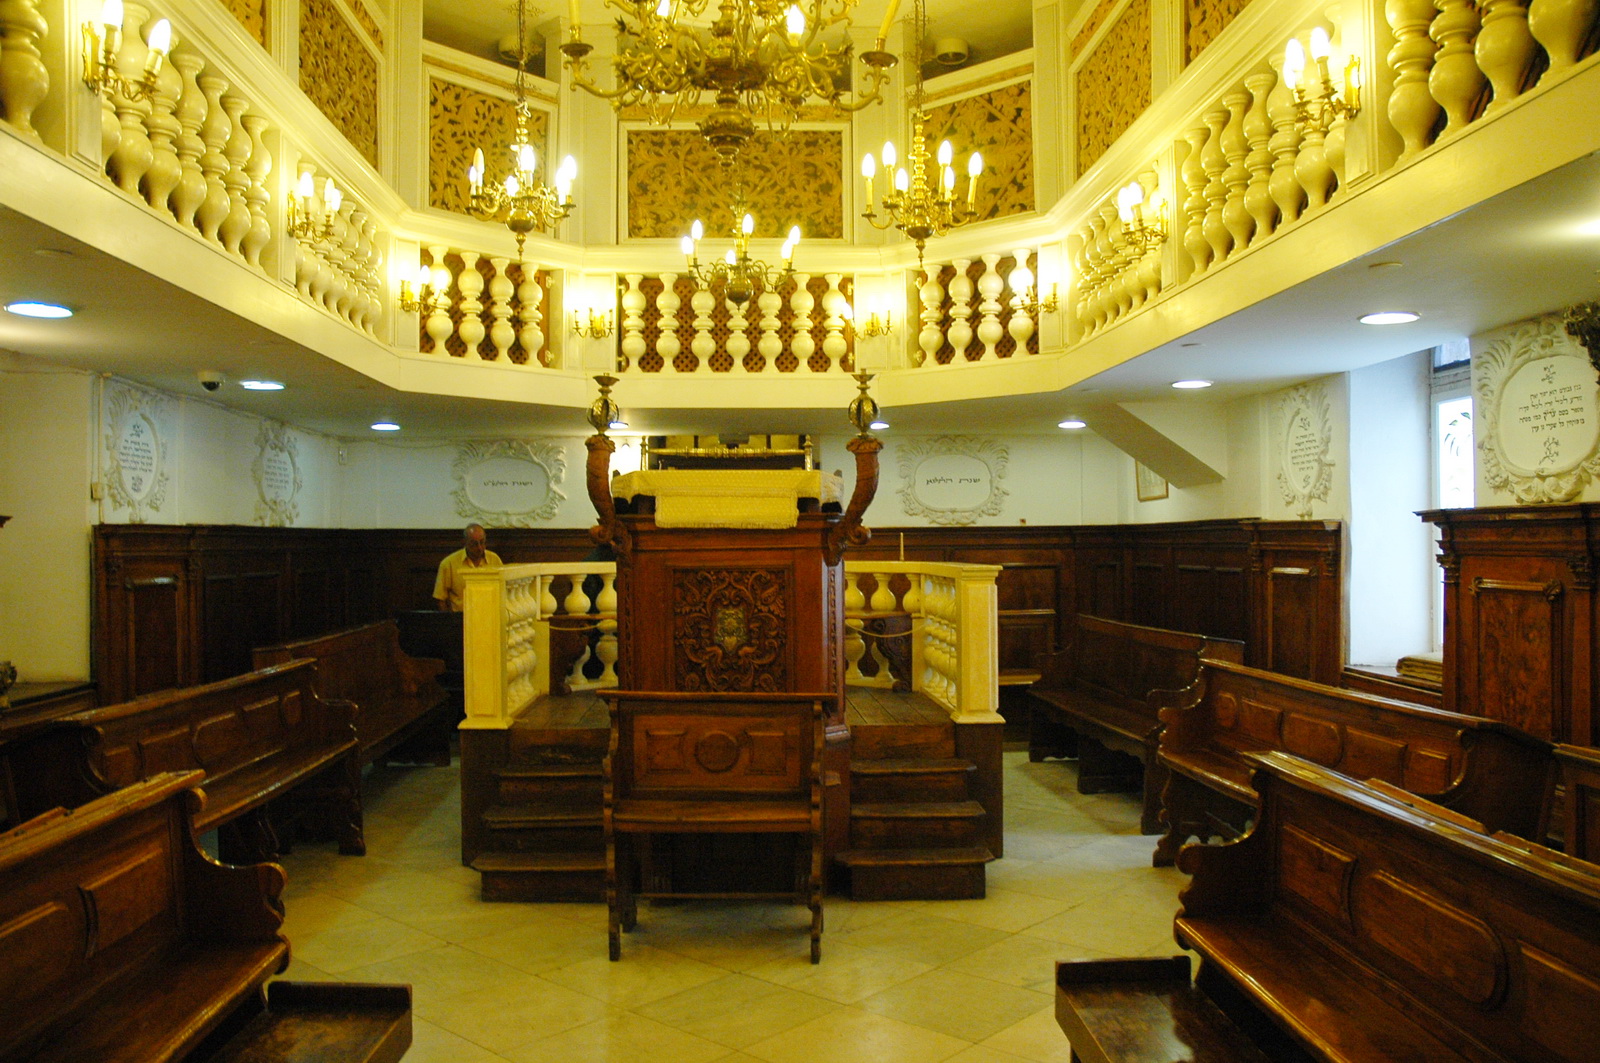 תצוגת בית הכנסת האיטלקי במוזיאון